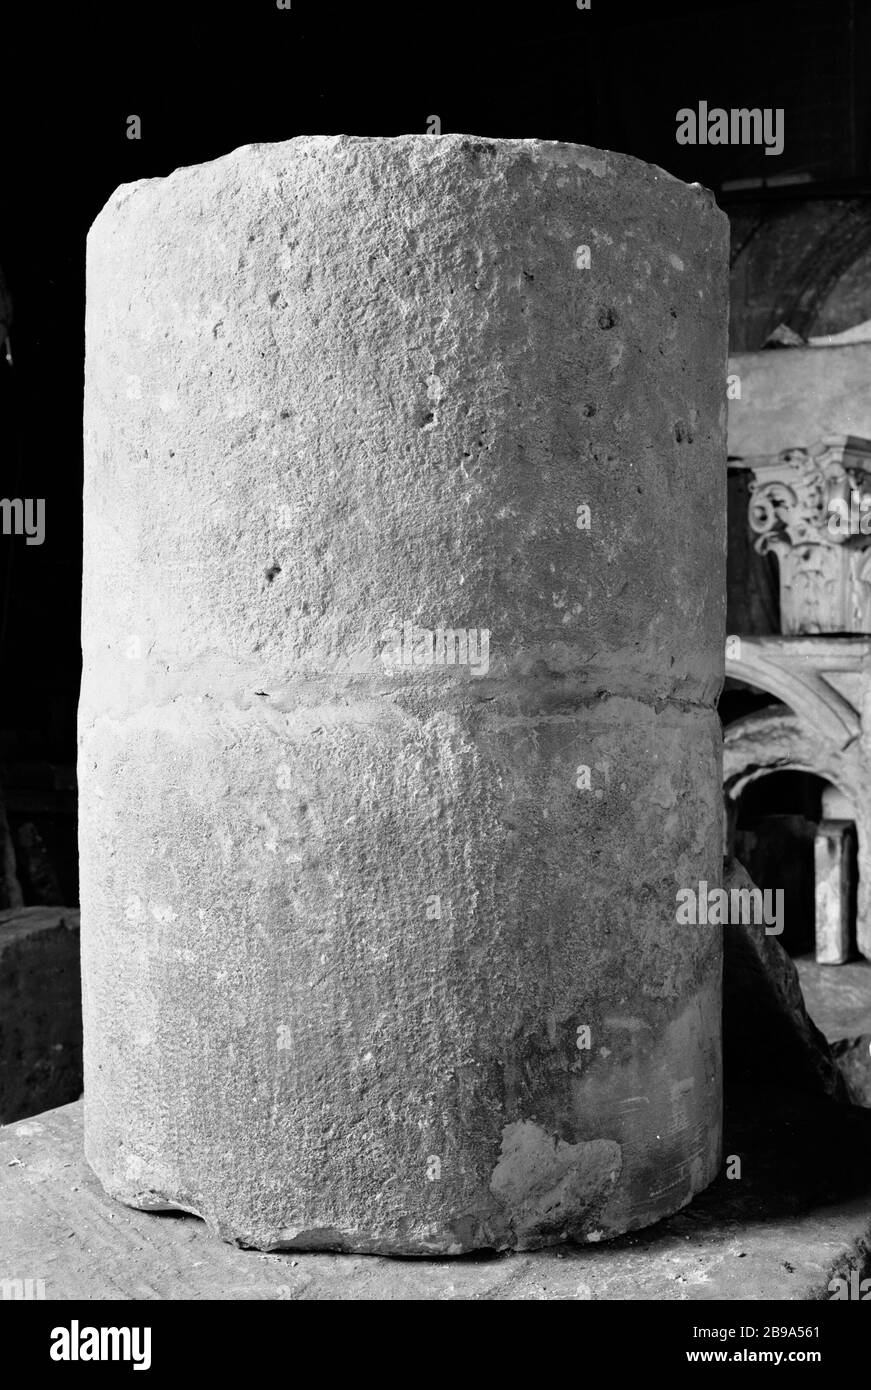 TWO DRUMS COLUMN FROM THE CRYPT OF THE CHAPEL SAINT-SYMPHORIEN-IN-THE-CITY, END OF THE CENTURY XIITH (CAT. 67) Anonyme. Deux tambours de colonne provenant de la crypte de la chapelle Saint-Symphorien-en-la-Cité, fin du XIIe siècle (cat. 67). Pierre. Paris, musée Carnavalet. Stock Photo